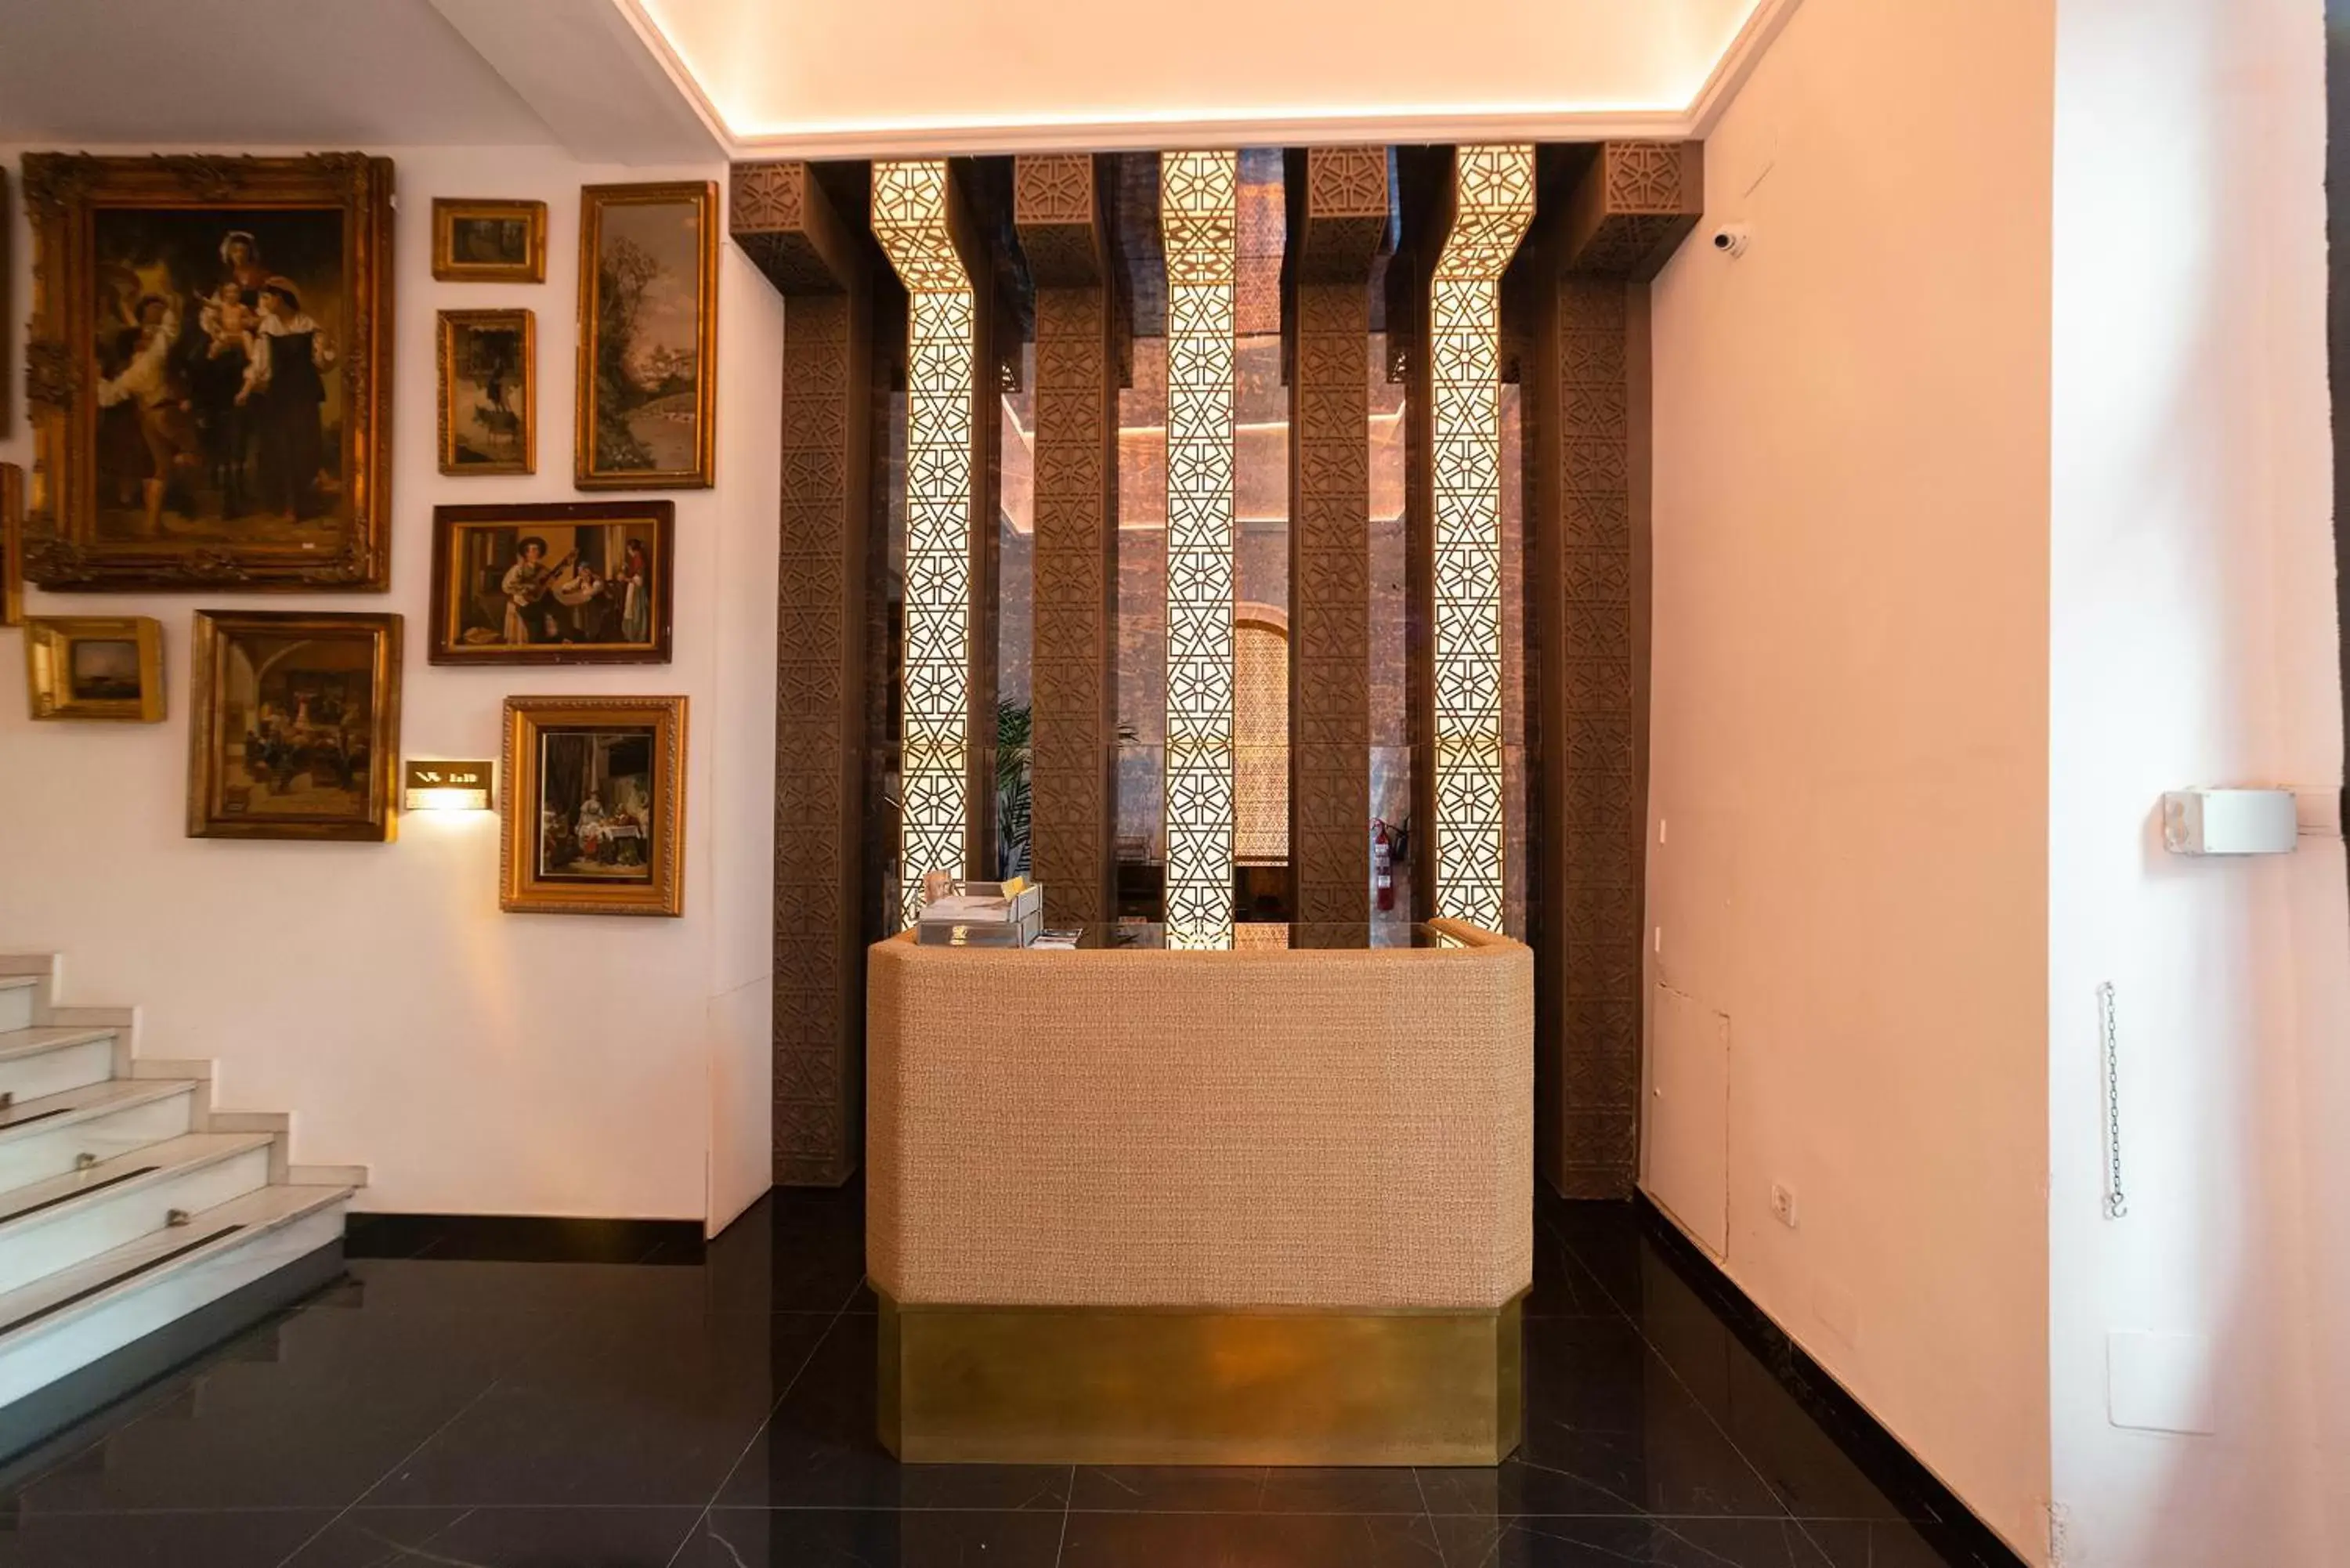 Lobby or reception in Hotel Casa Palacio la Sal